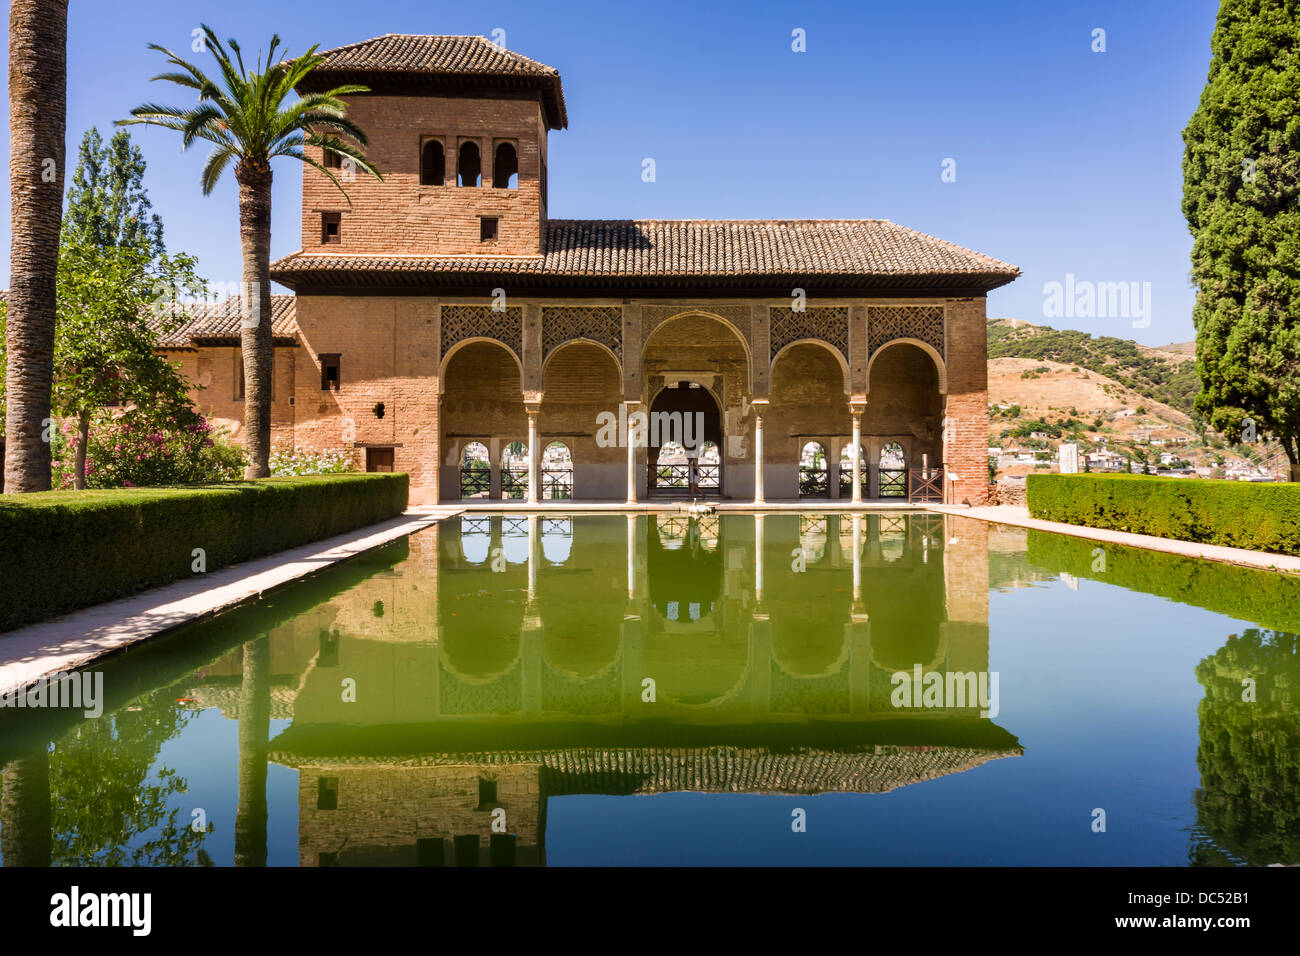 Les Dames Tower - Torre de las Damas. L'Alhambra, Granada - Espagne. Banque D'Images